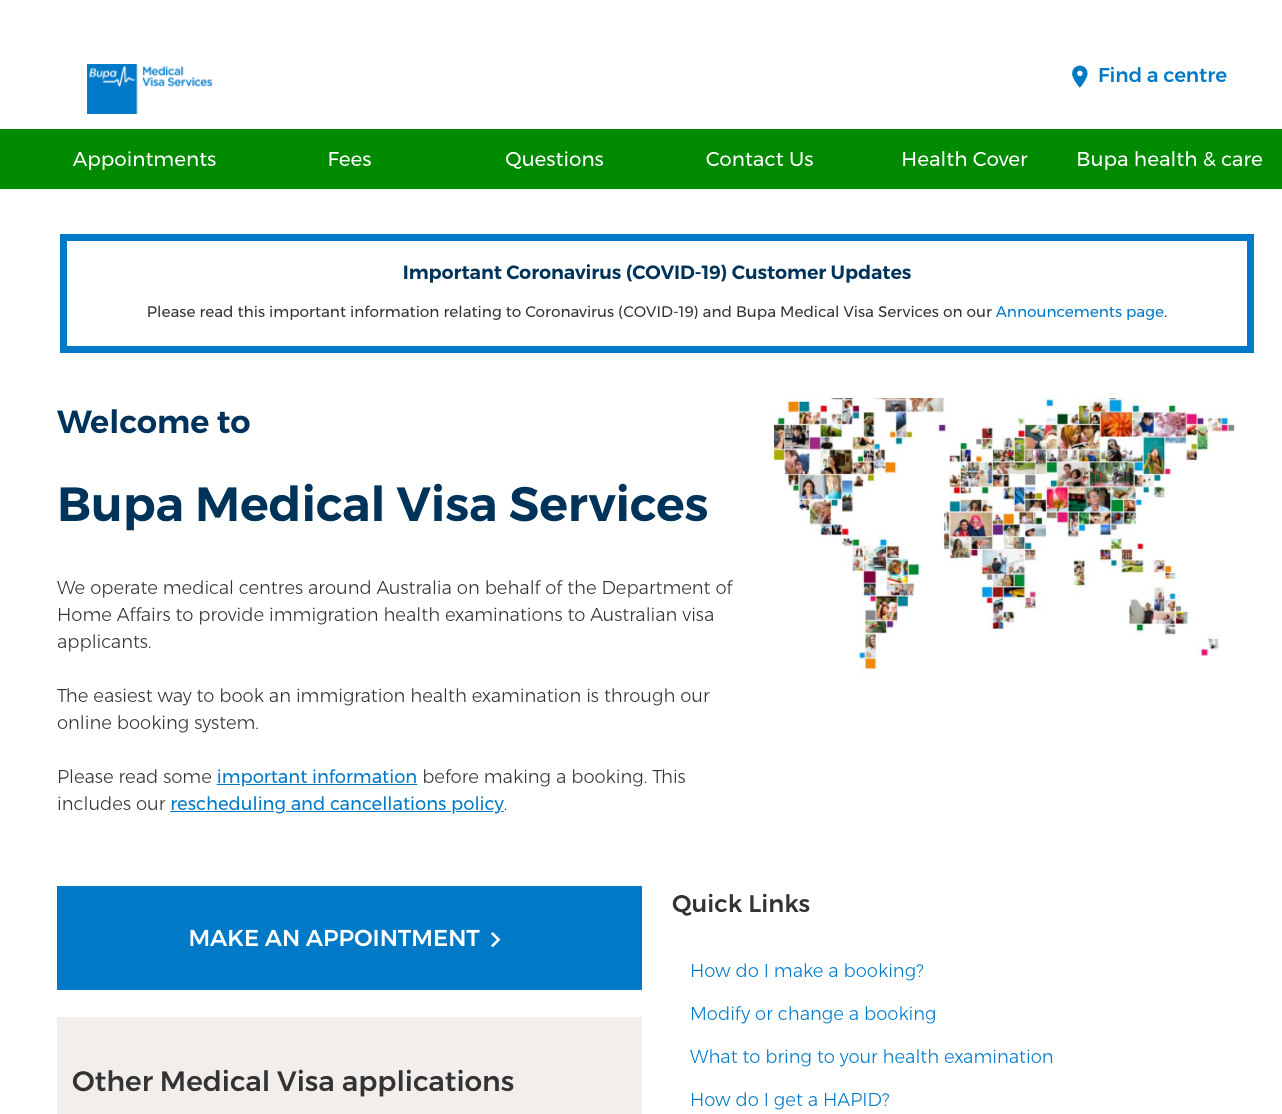 首先进入Bupa VMS的网页：https://www.bupa.com.au/bupamvs，点击MAKE AN APPOINTMENT进入到下一个页面